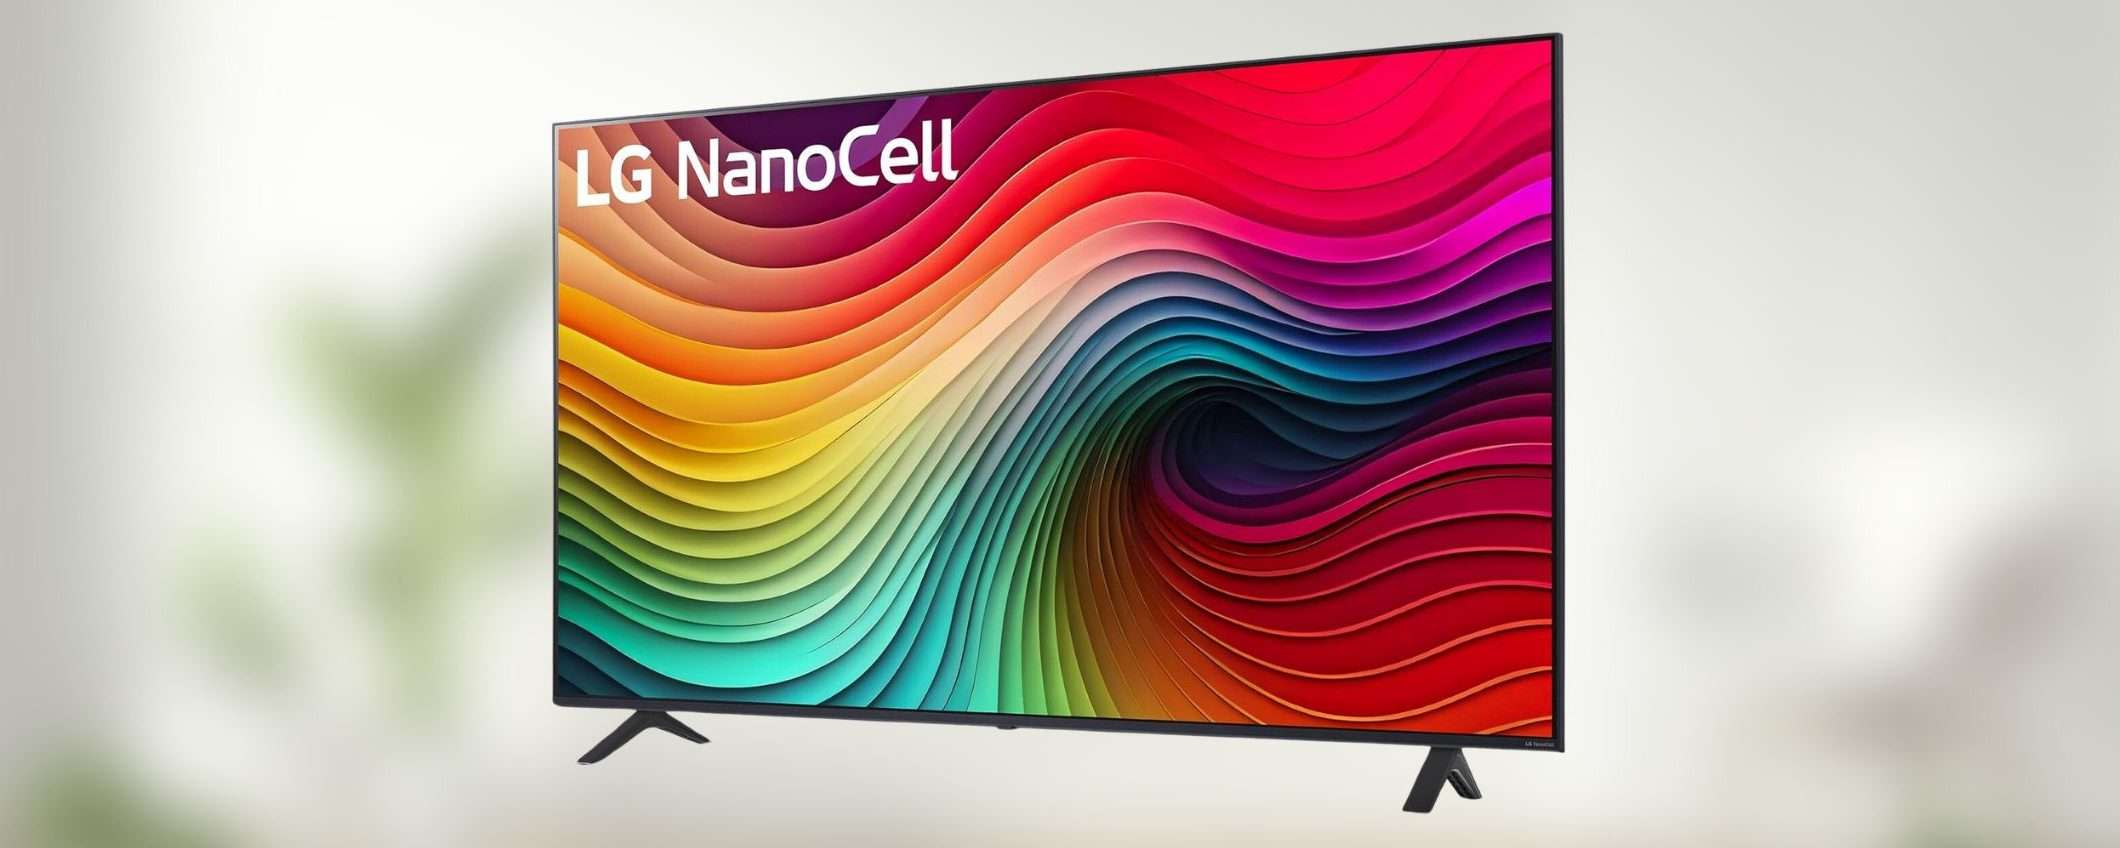 Smart TV LG NanoCell 55